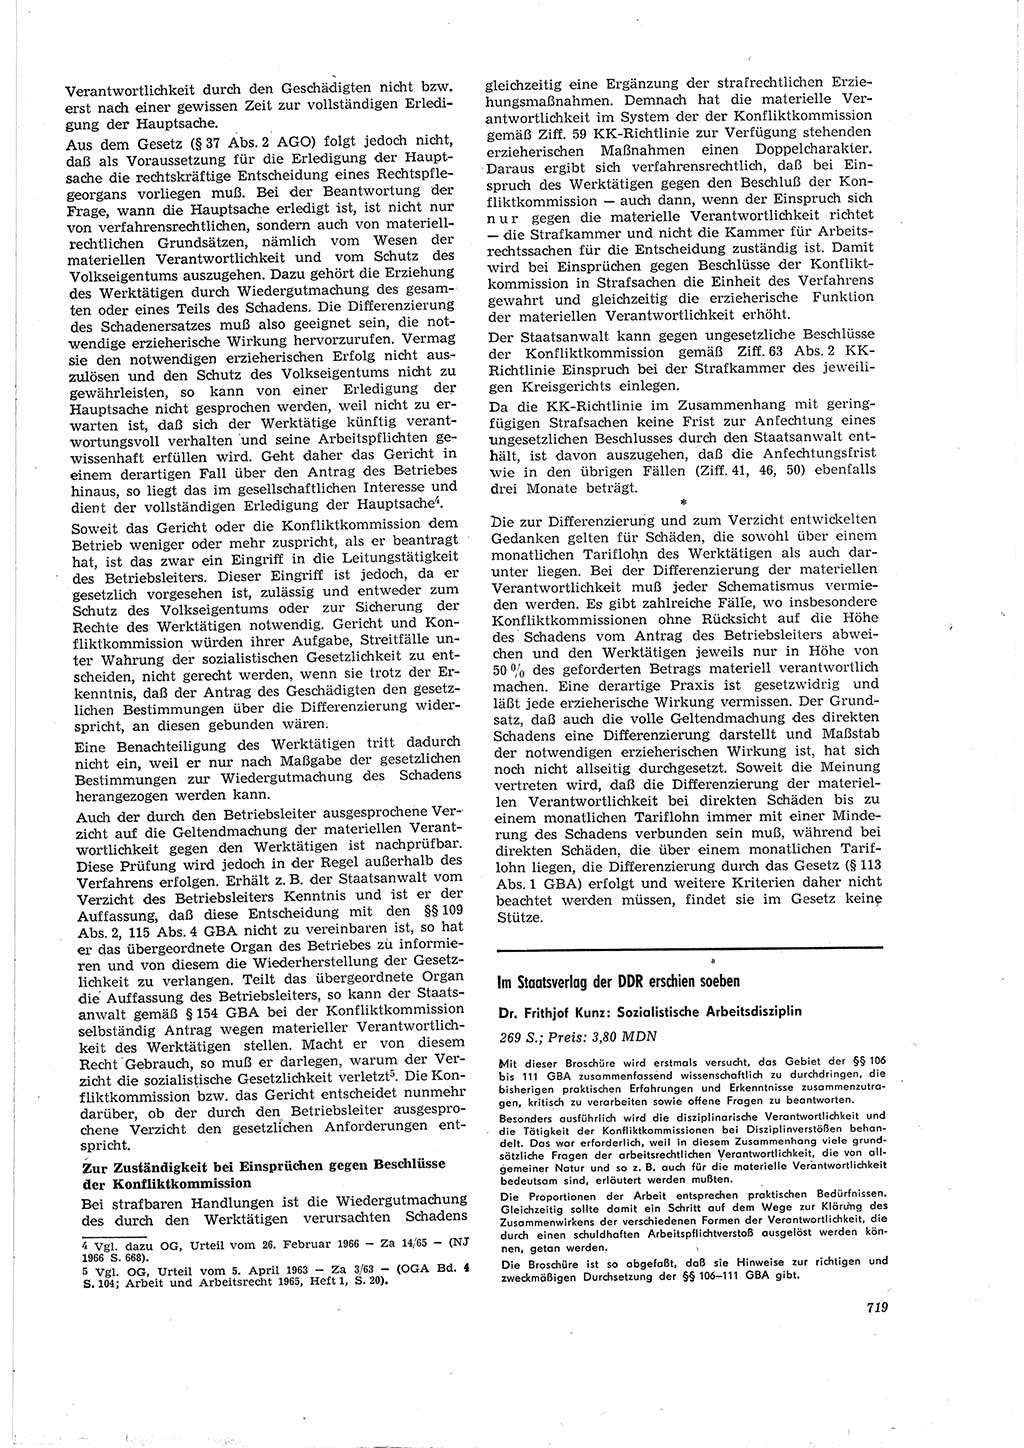 Neue Justiz (NJ), Zeitschrift für Recht und Rechtswissenschaft [Deutsche Demokratische Republik (DDR)], 20. Jahrgang 1966, Seite 719 (NJ DDR 1966, S. 719)